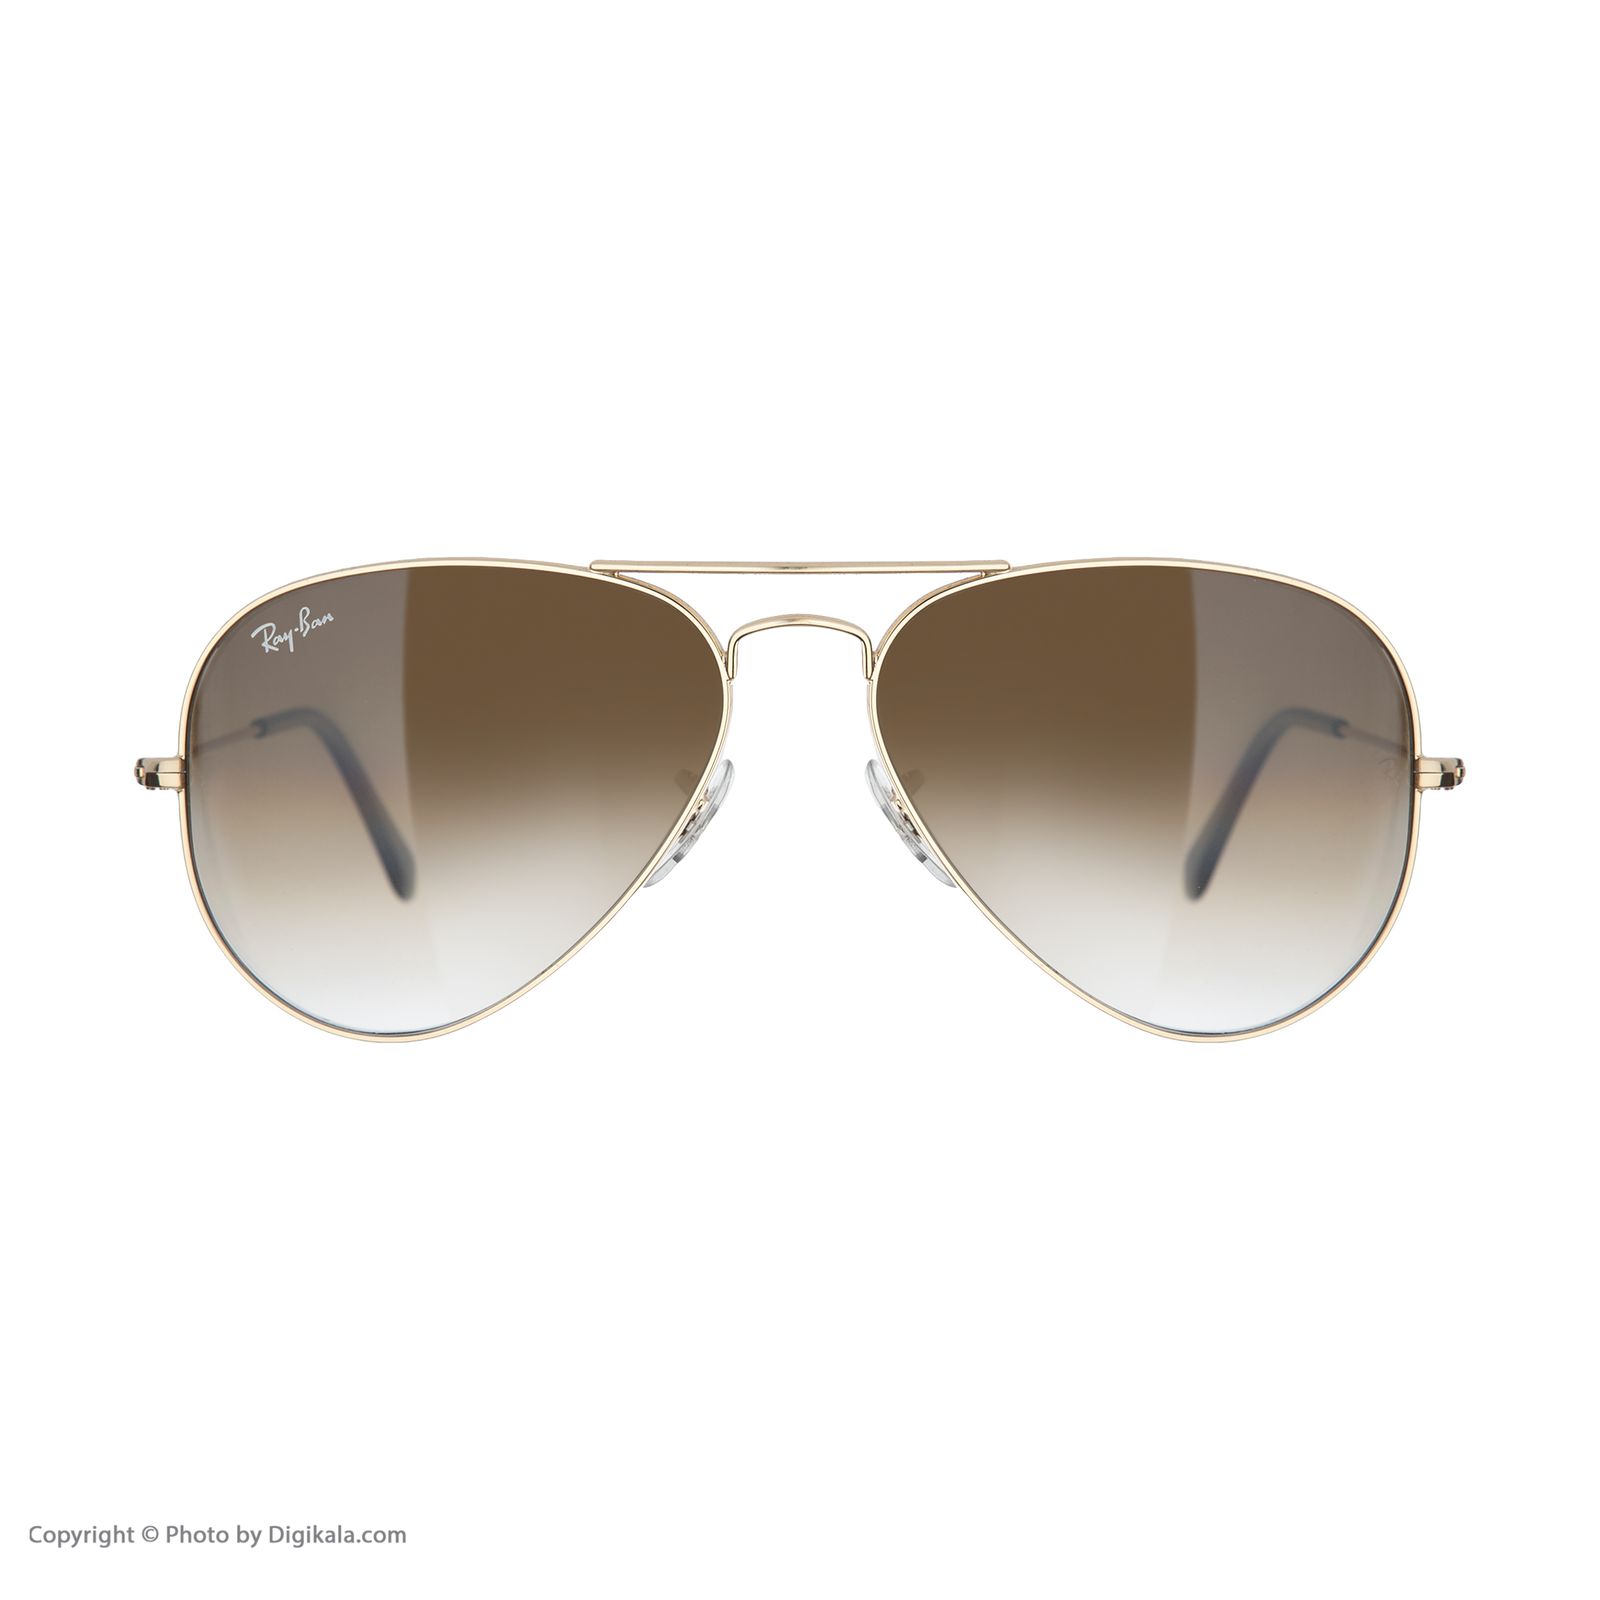 عینک آفتابی ری بن مدل 001/51-58 -  - 3